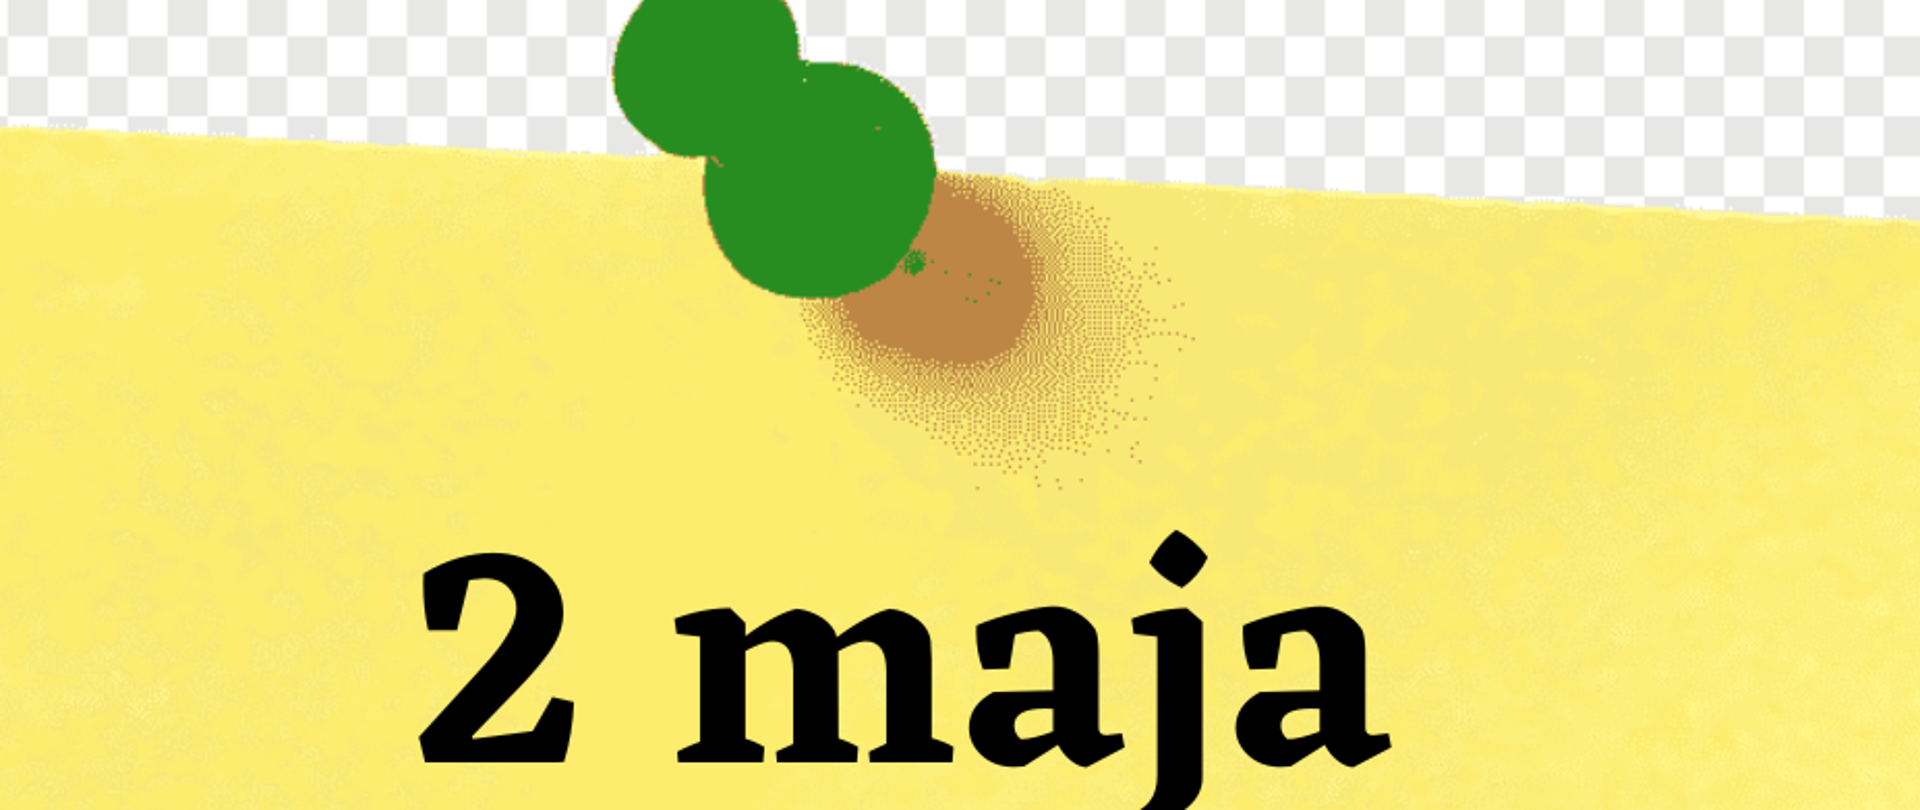 Duża żółta karta z zieloną pineską od góry. Na kartce napis "2 maja dzień wolny od zajęć edukacyjnych"